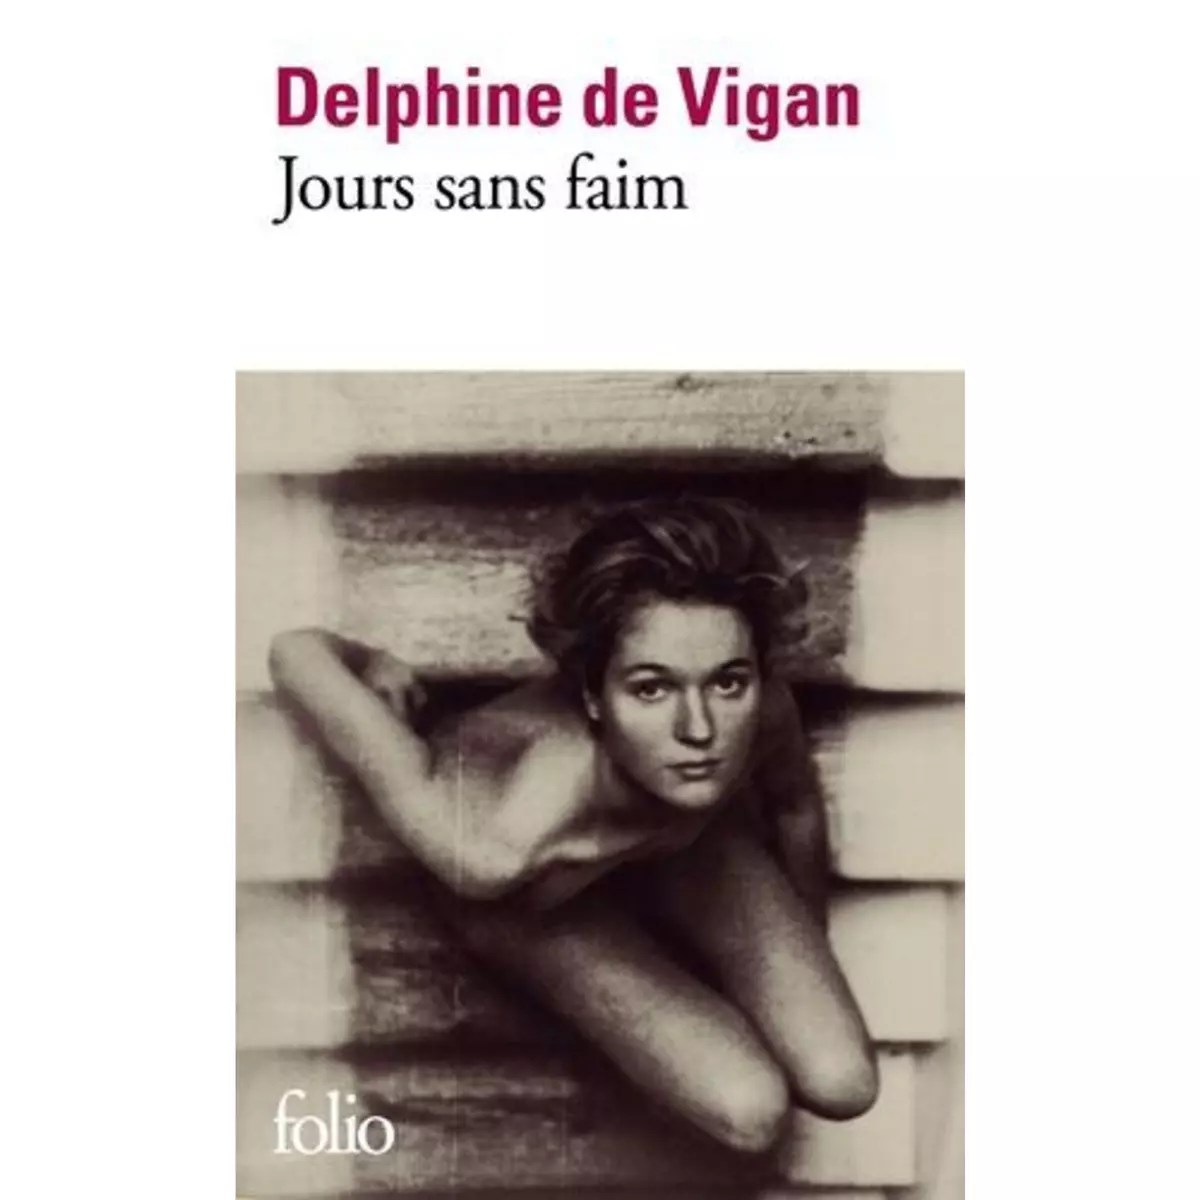  JOURS SANS FAIM, Vigan Delphine de